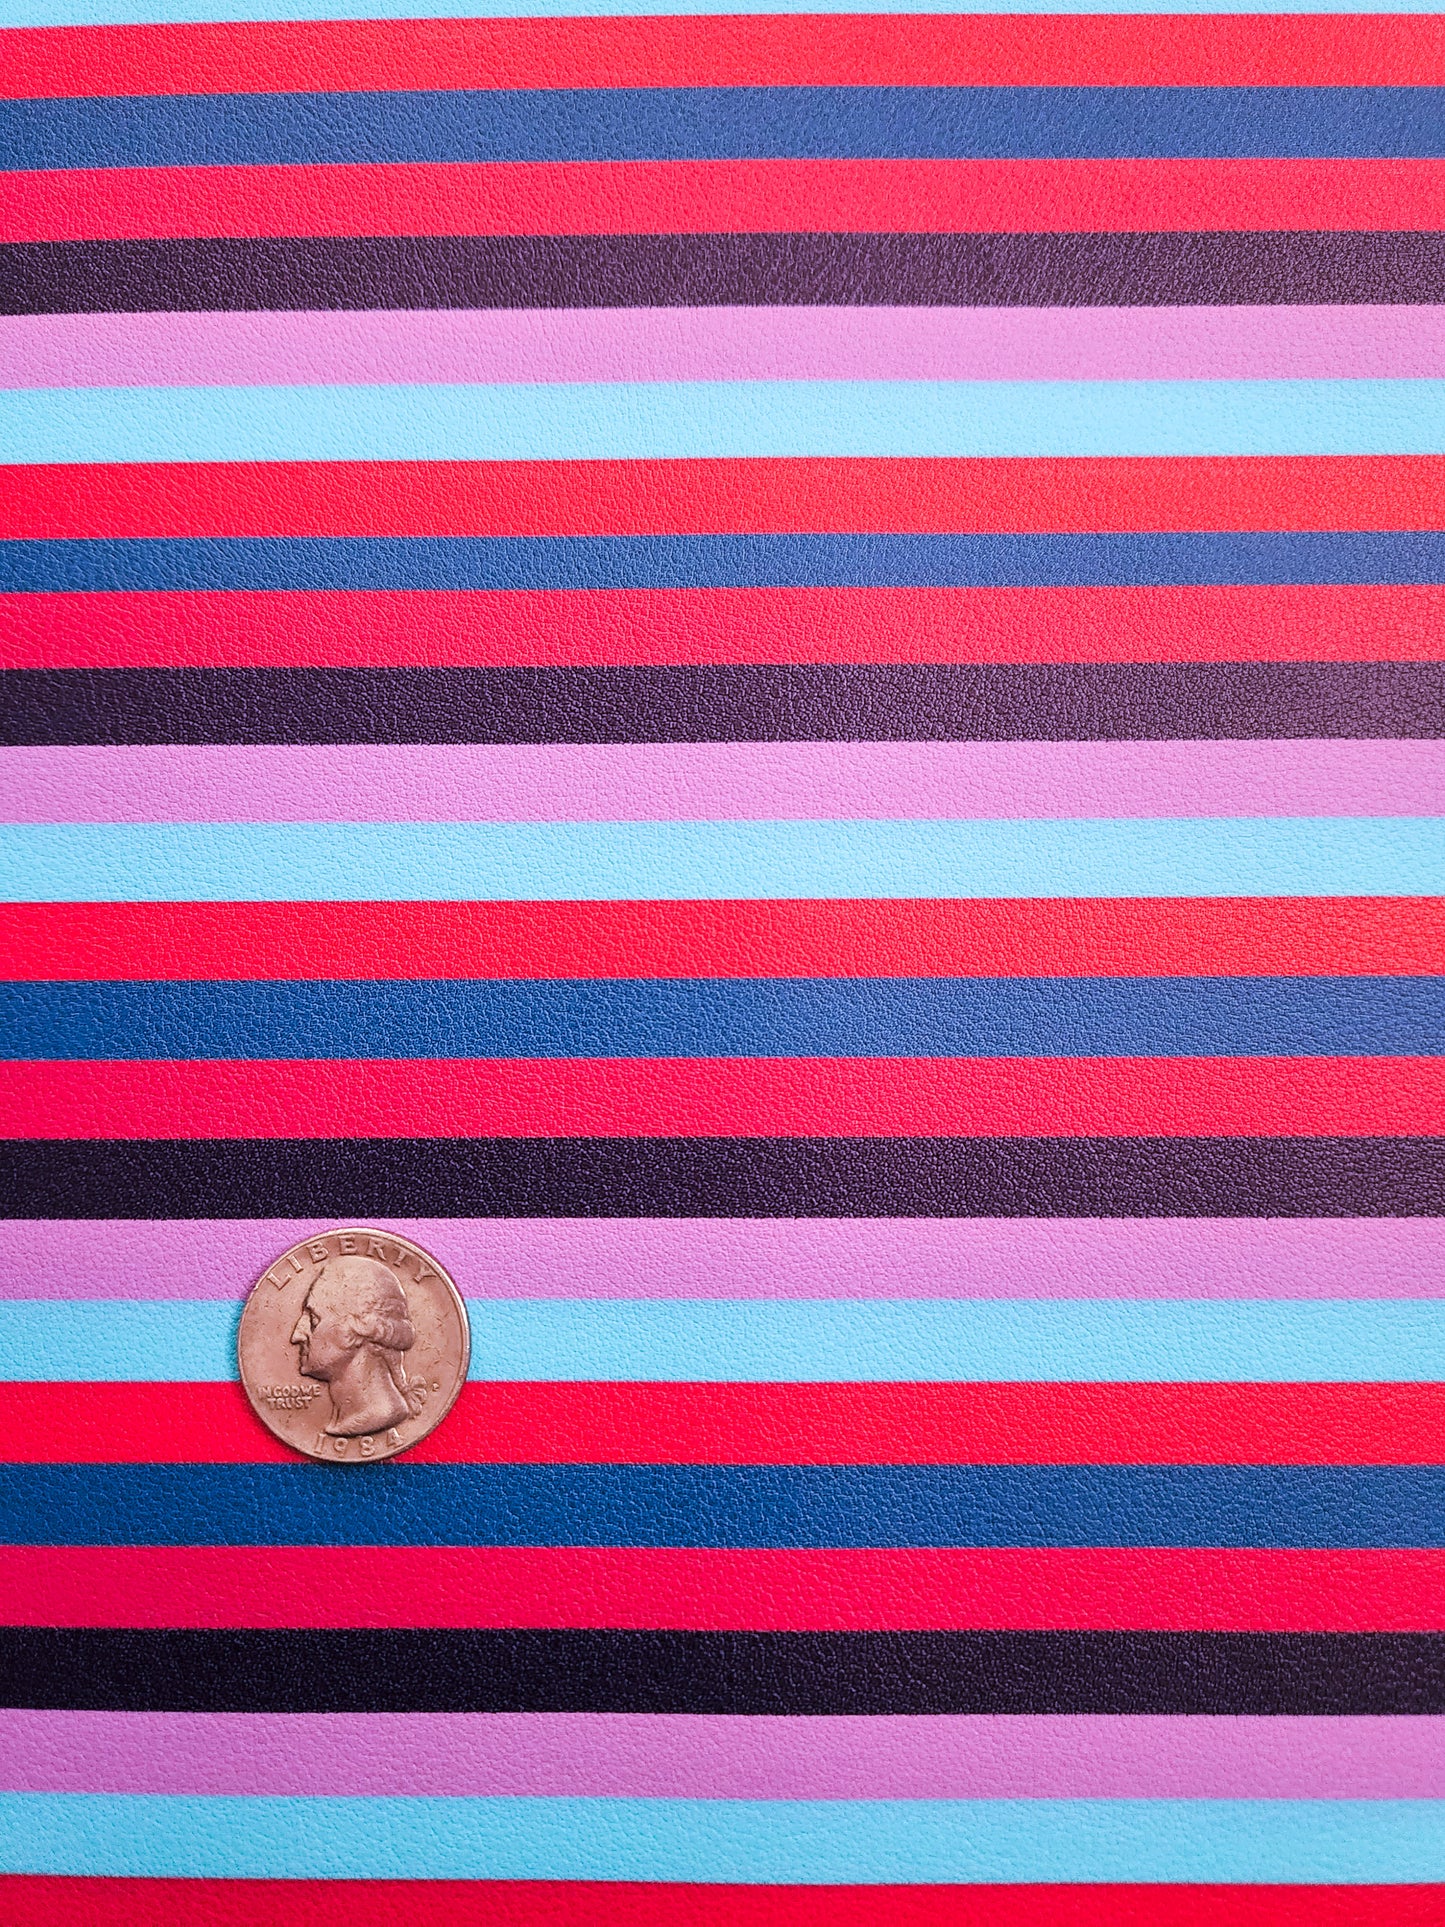 Purple Stripes 9x12 faux leather sheet